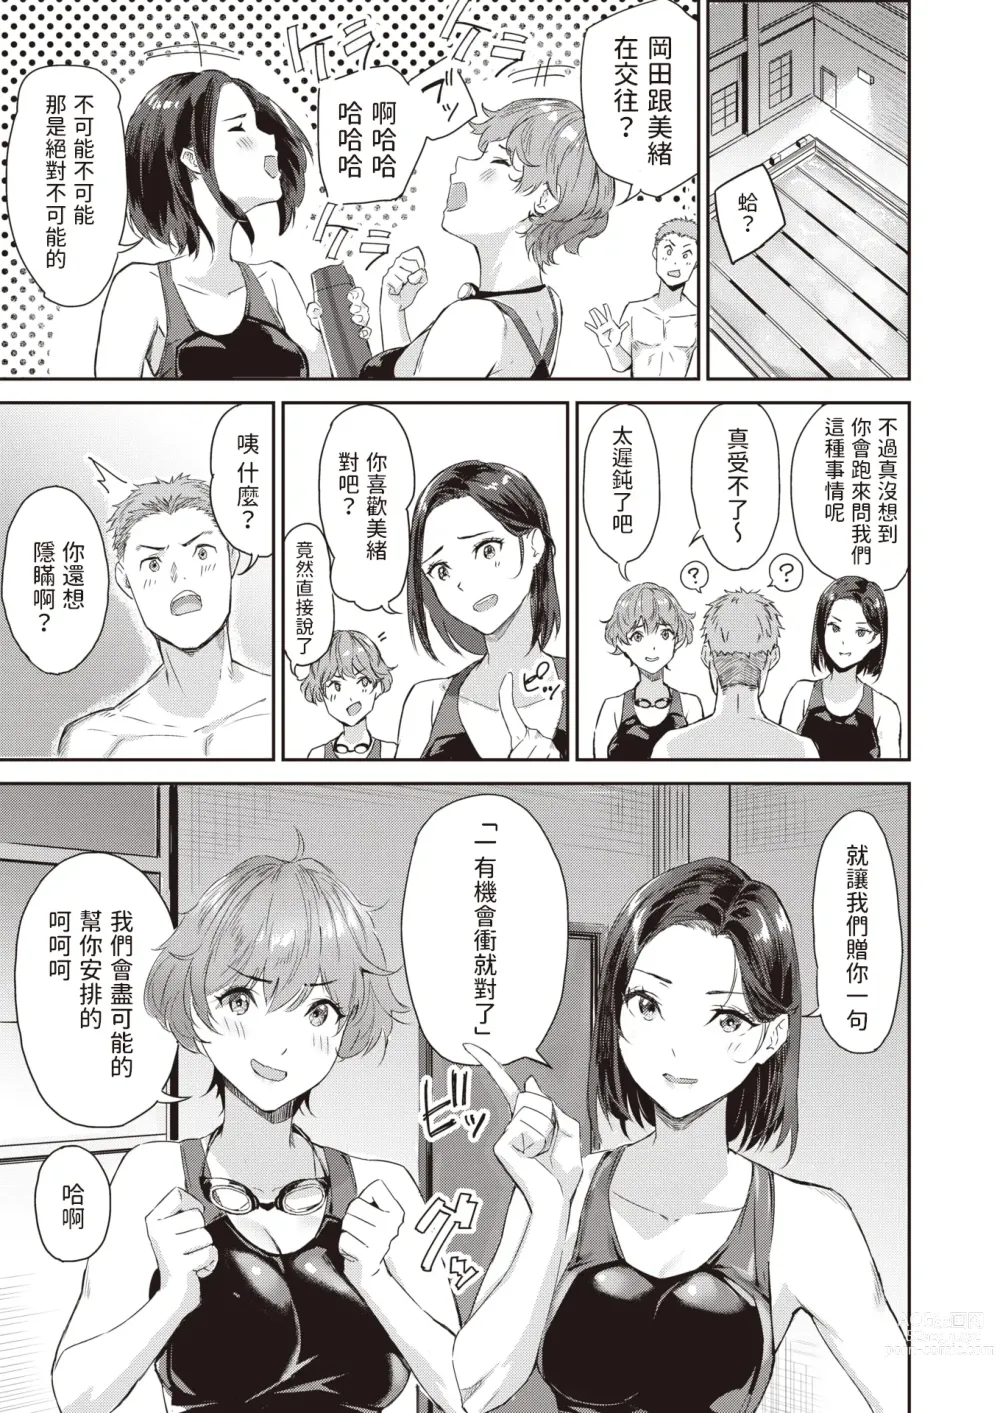 Page 7 of manga Splash!